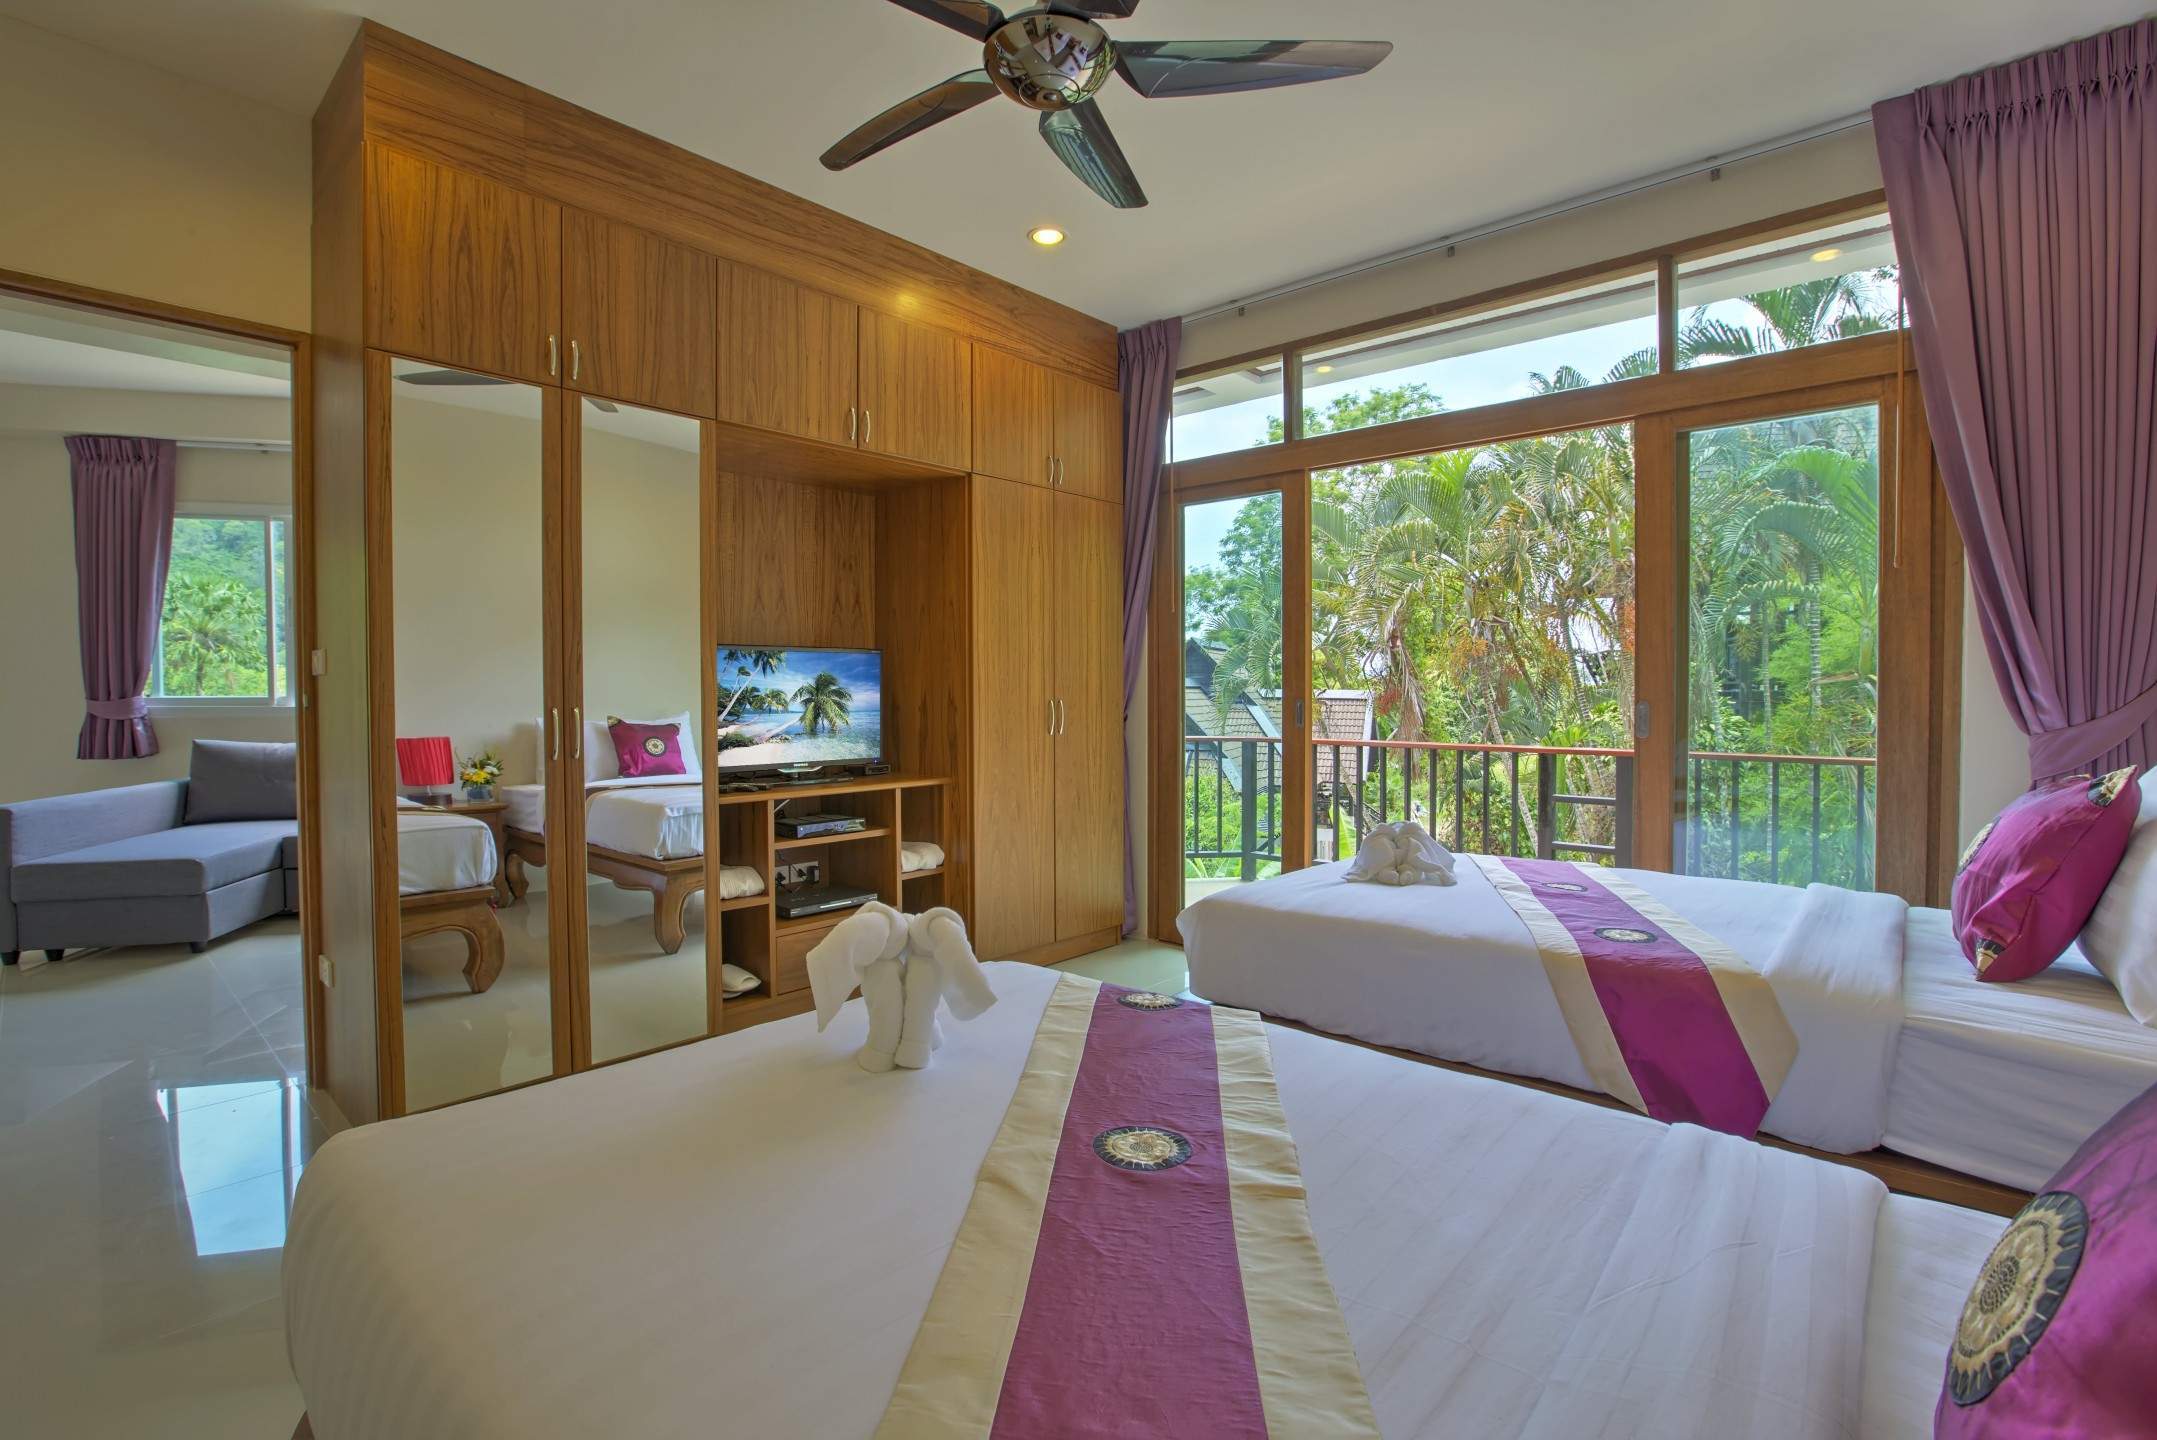 Rent villa Patong Hill 8, Thailand, Phuket, Patong | Villacarte